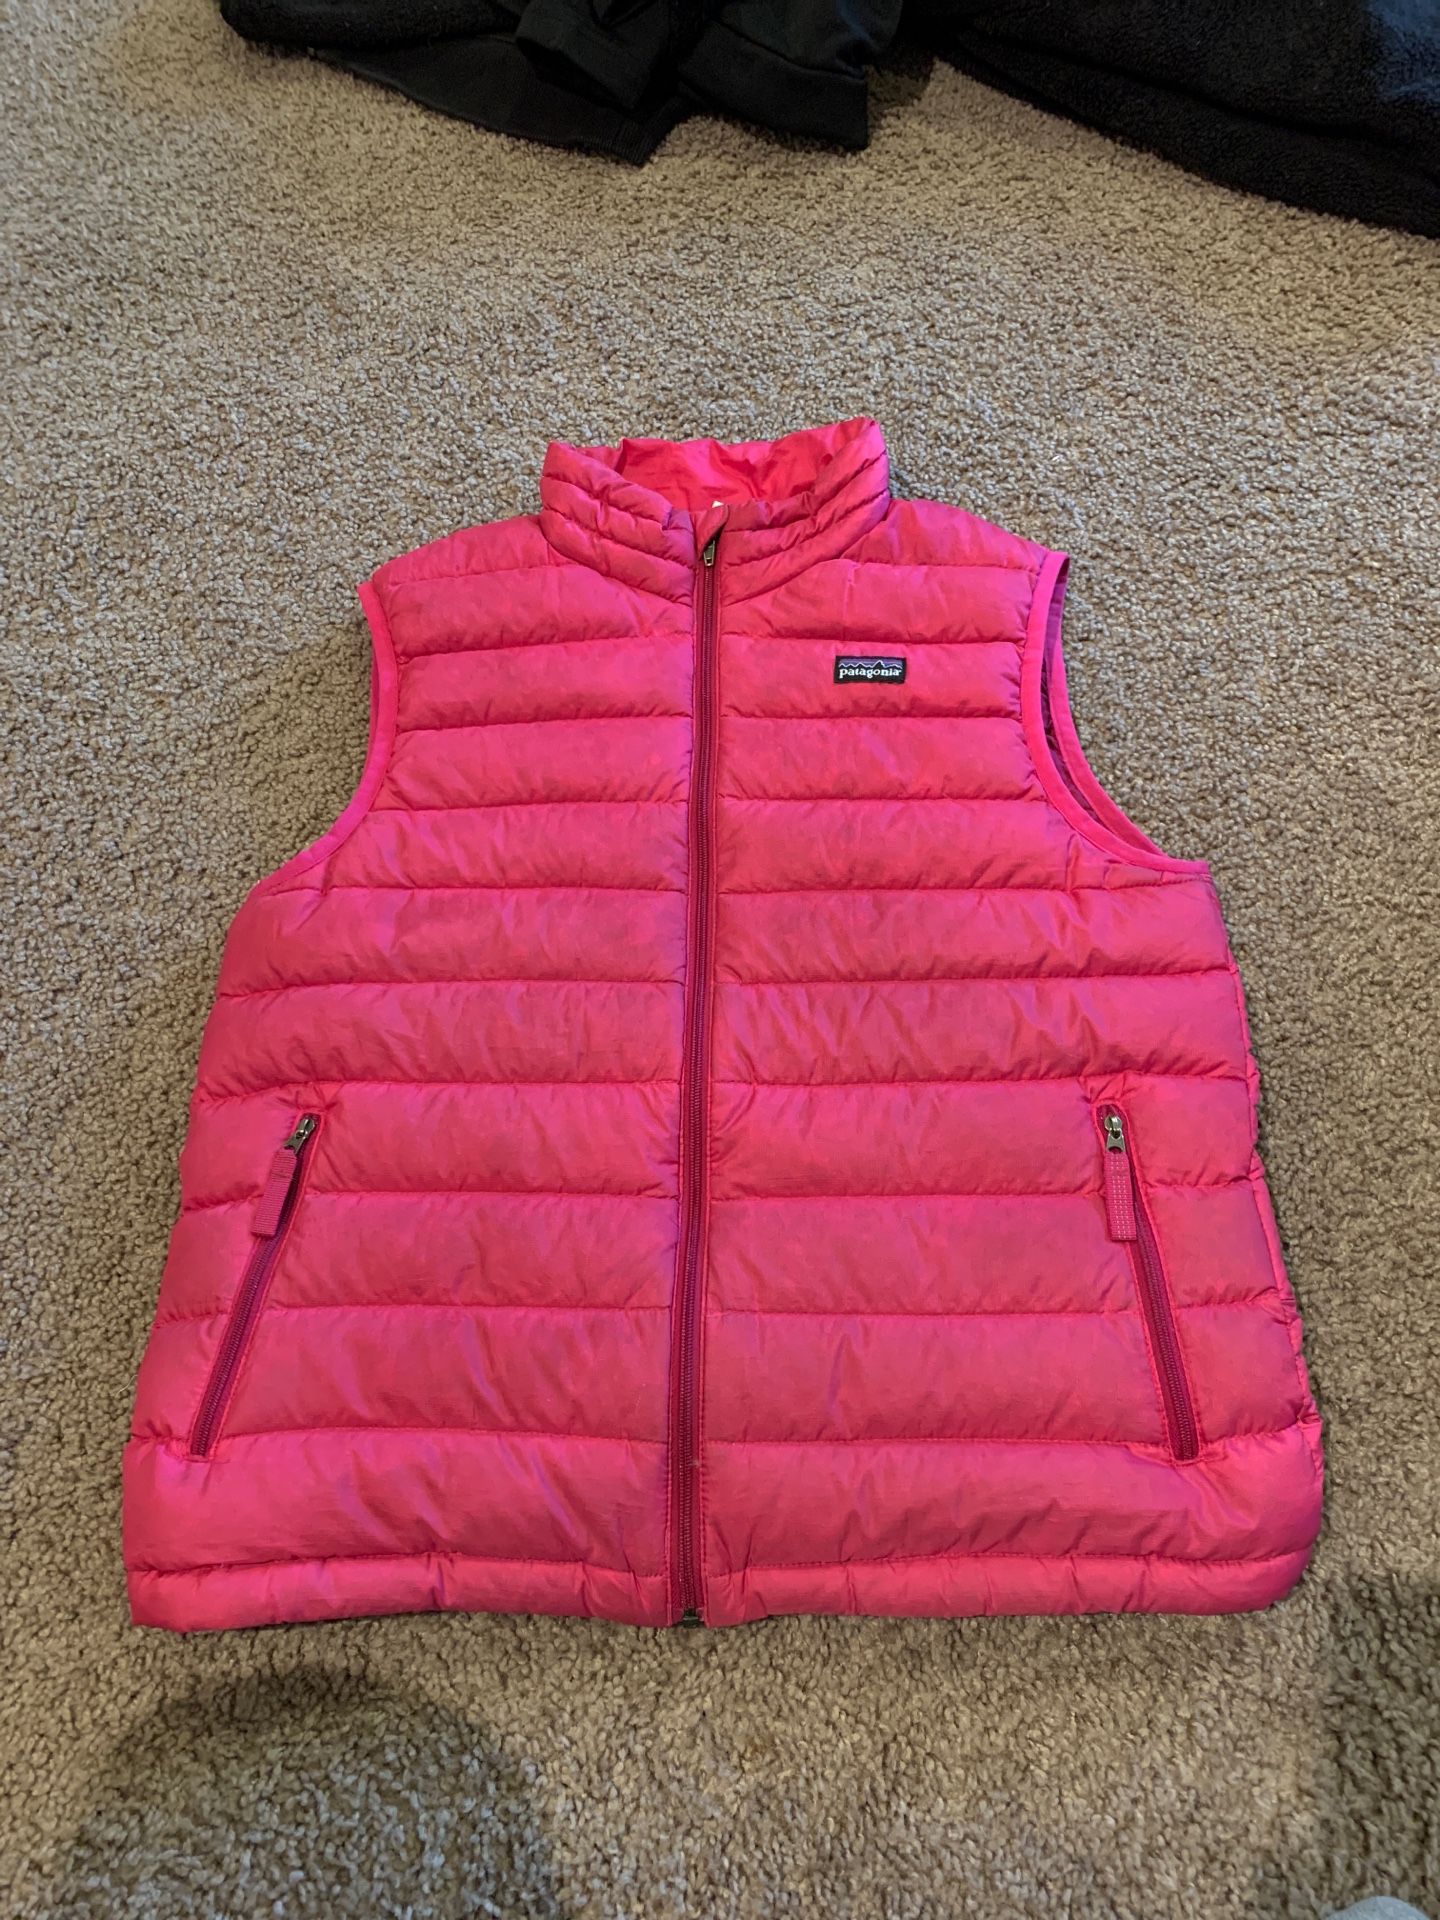 Girls XL (14) pink PATAGONIA goose down vest